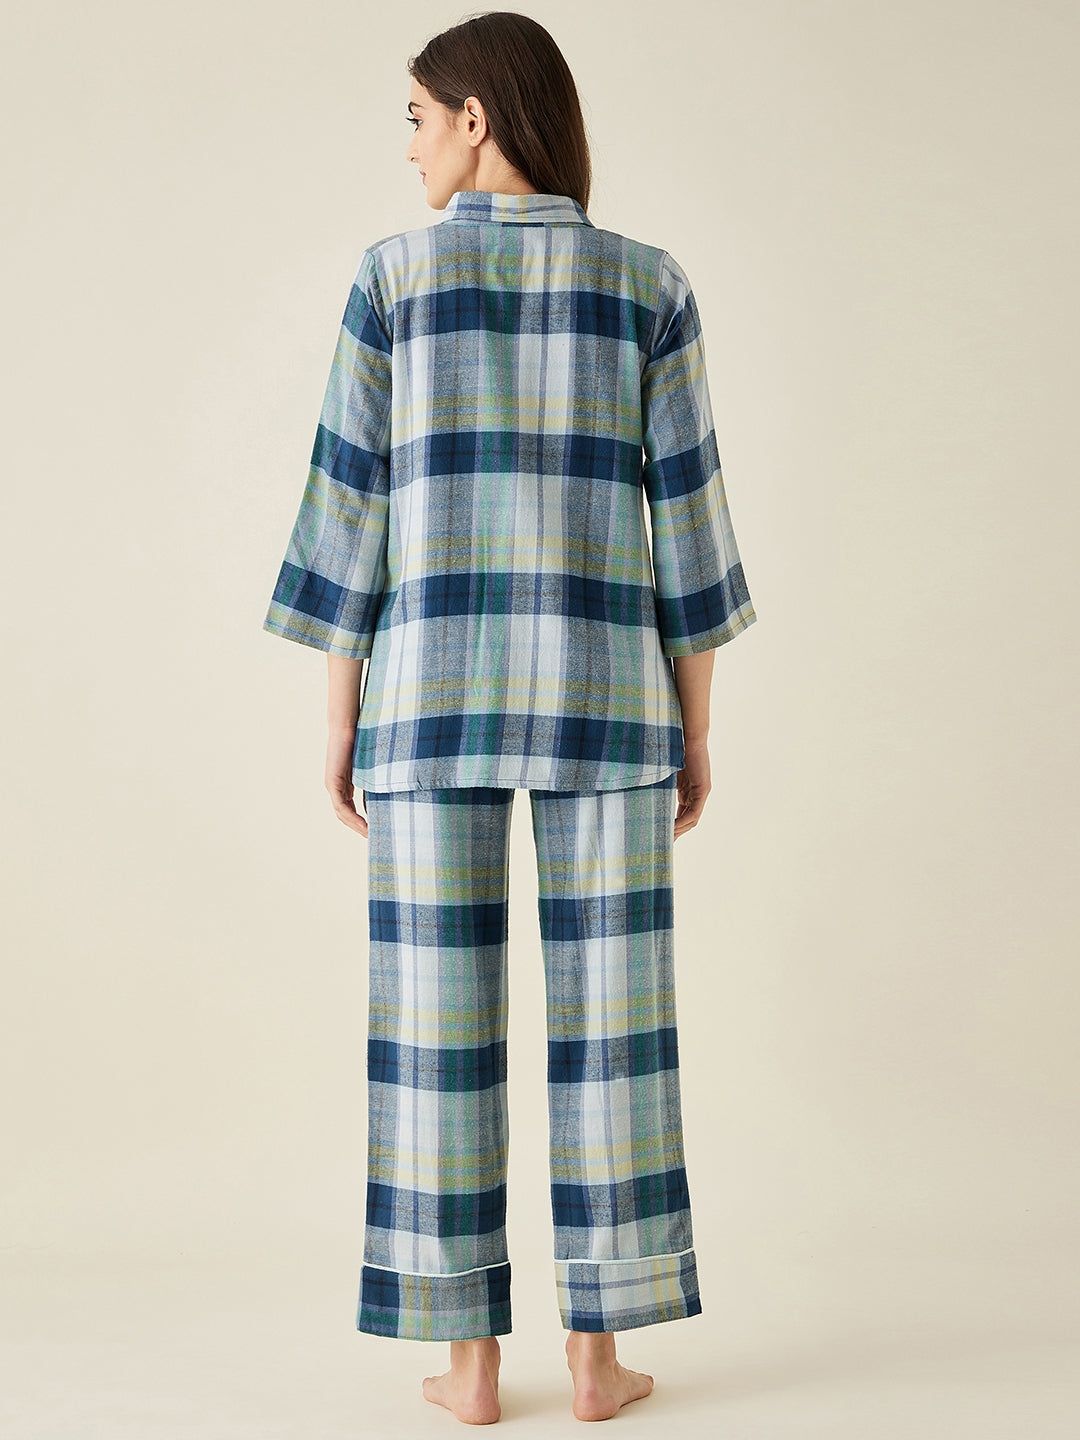 Shades Of Blue Plaid Pyjama Set - The Kaftan Company